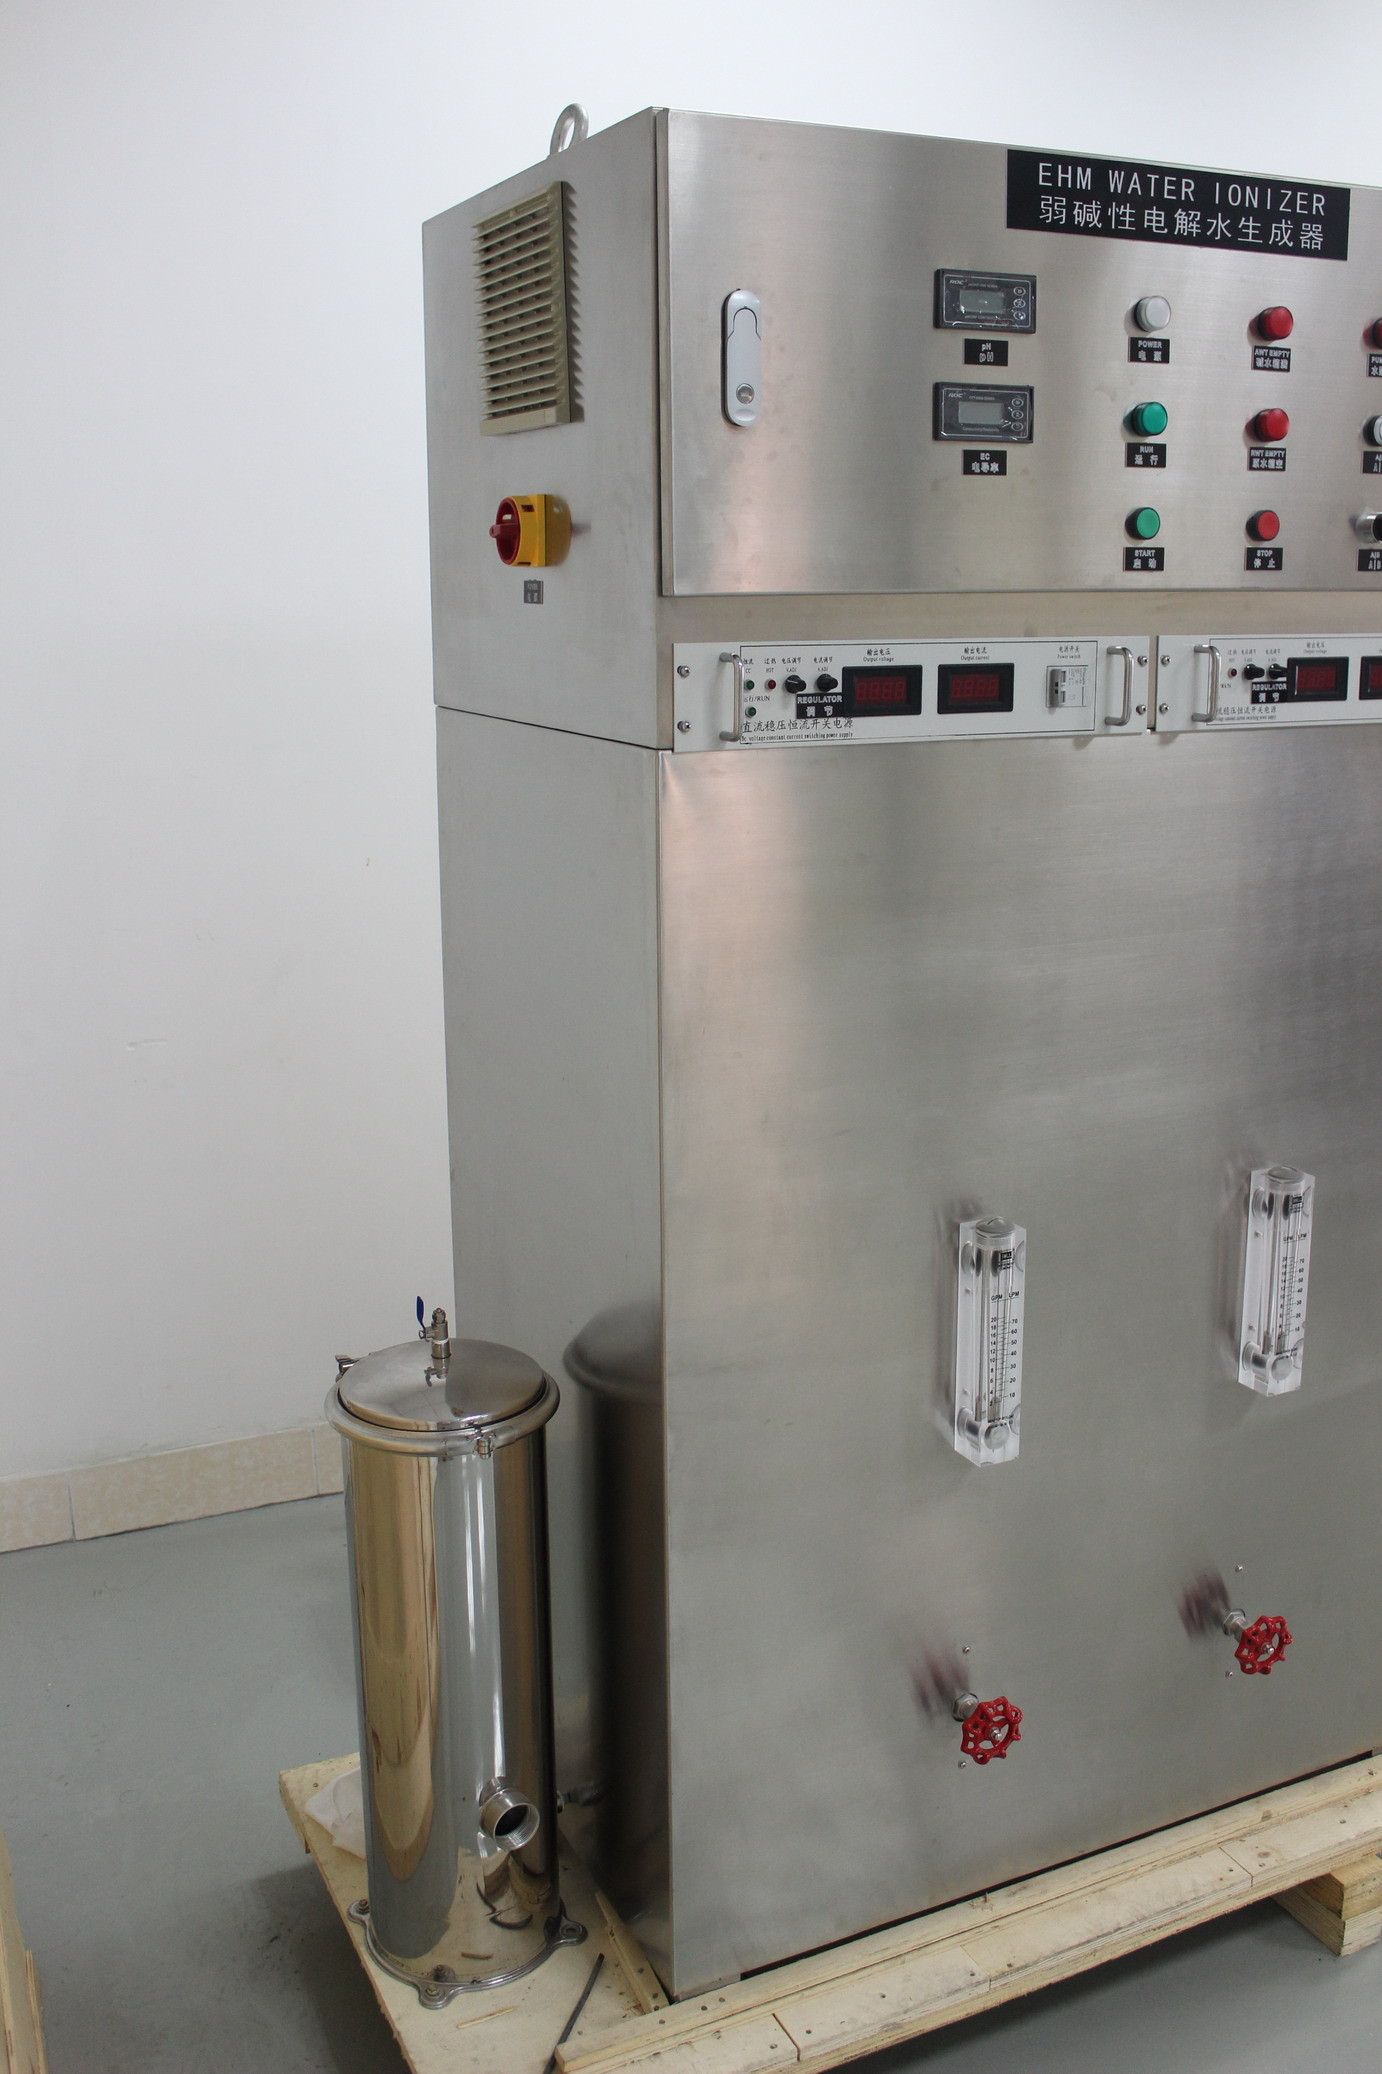 पारिस्थितिकी के अनुकूल वाणिज्यिक पानी Ionizer incoporating, 440V 50Hz